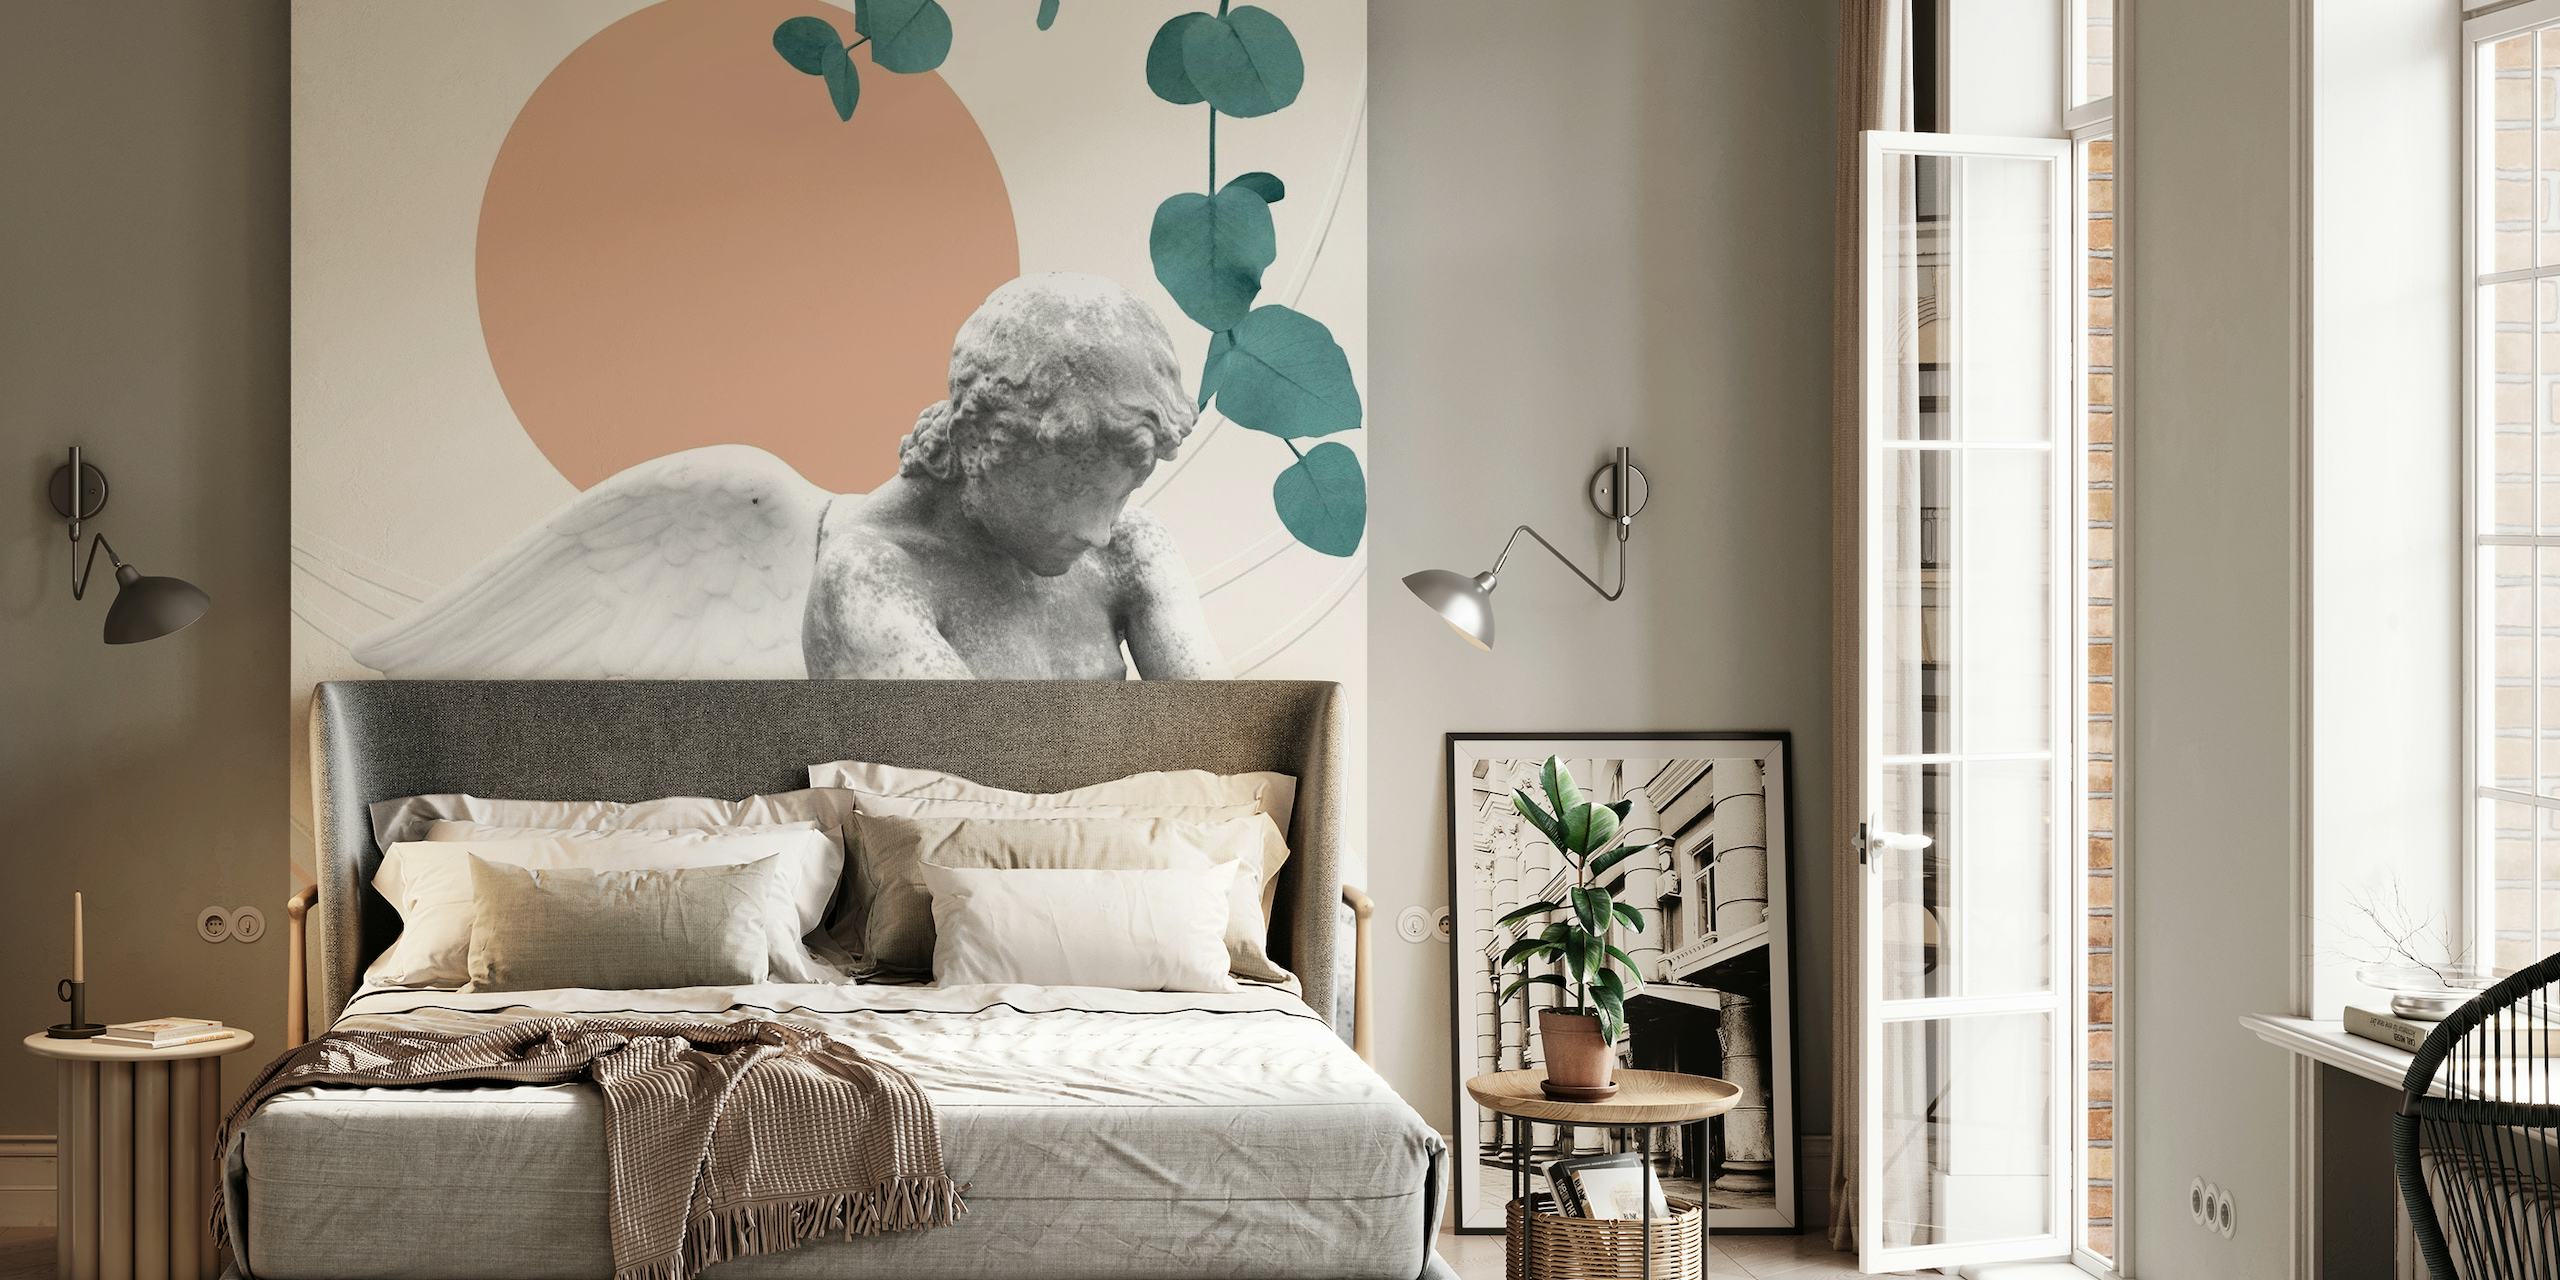 Mural de pared Eros Abstract Finesse con querubines, texturas de mármol, formas geométricas y elementos botánicos.